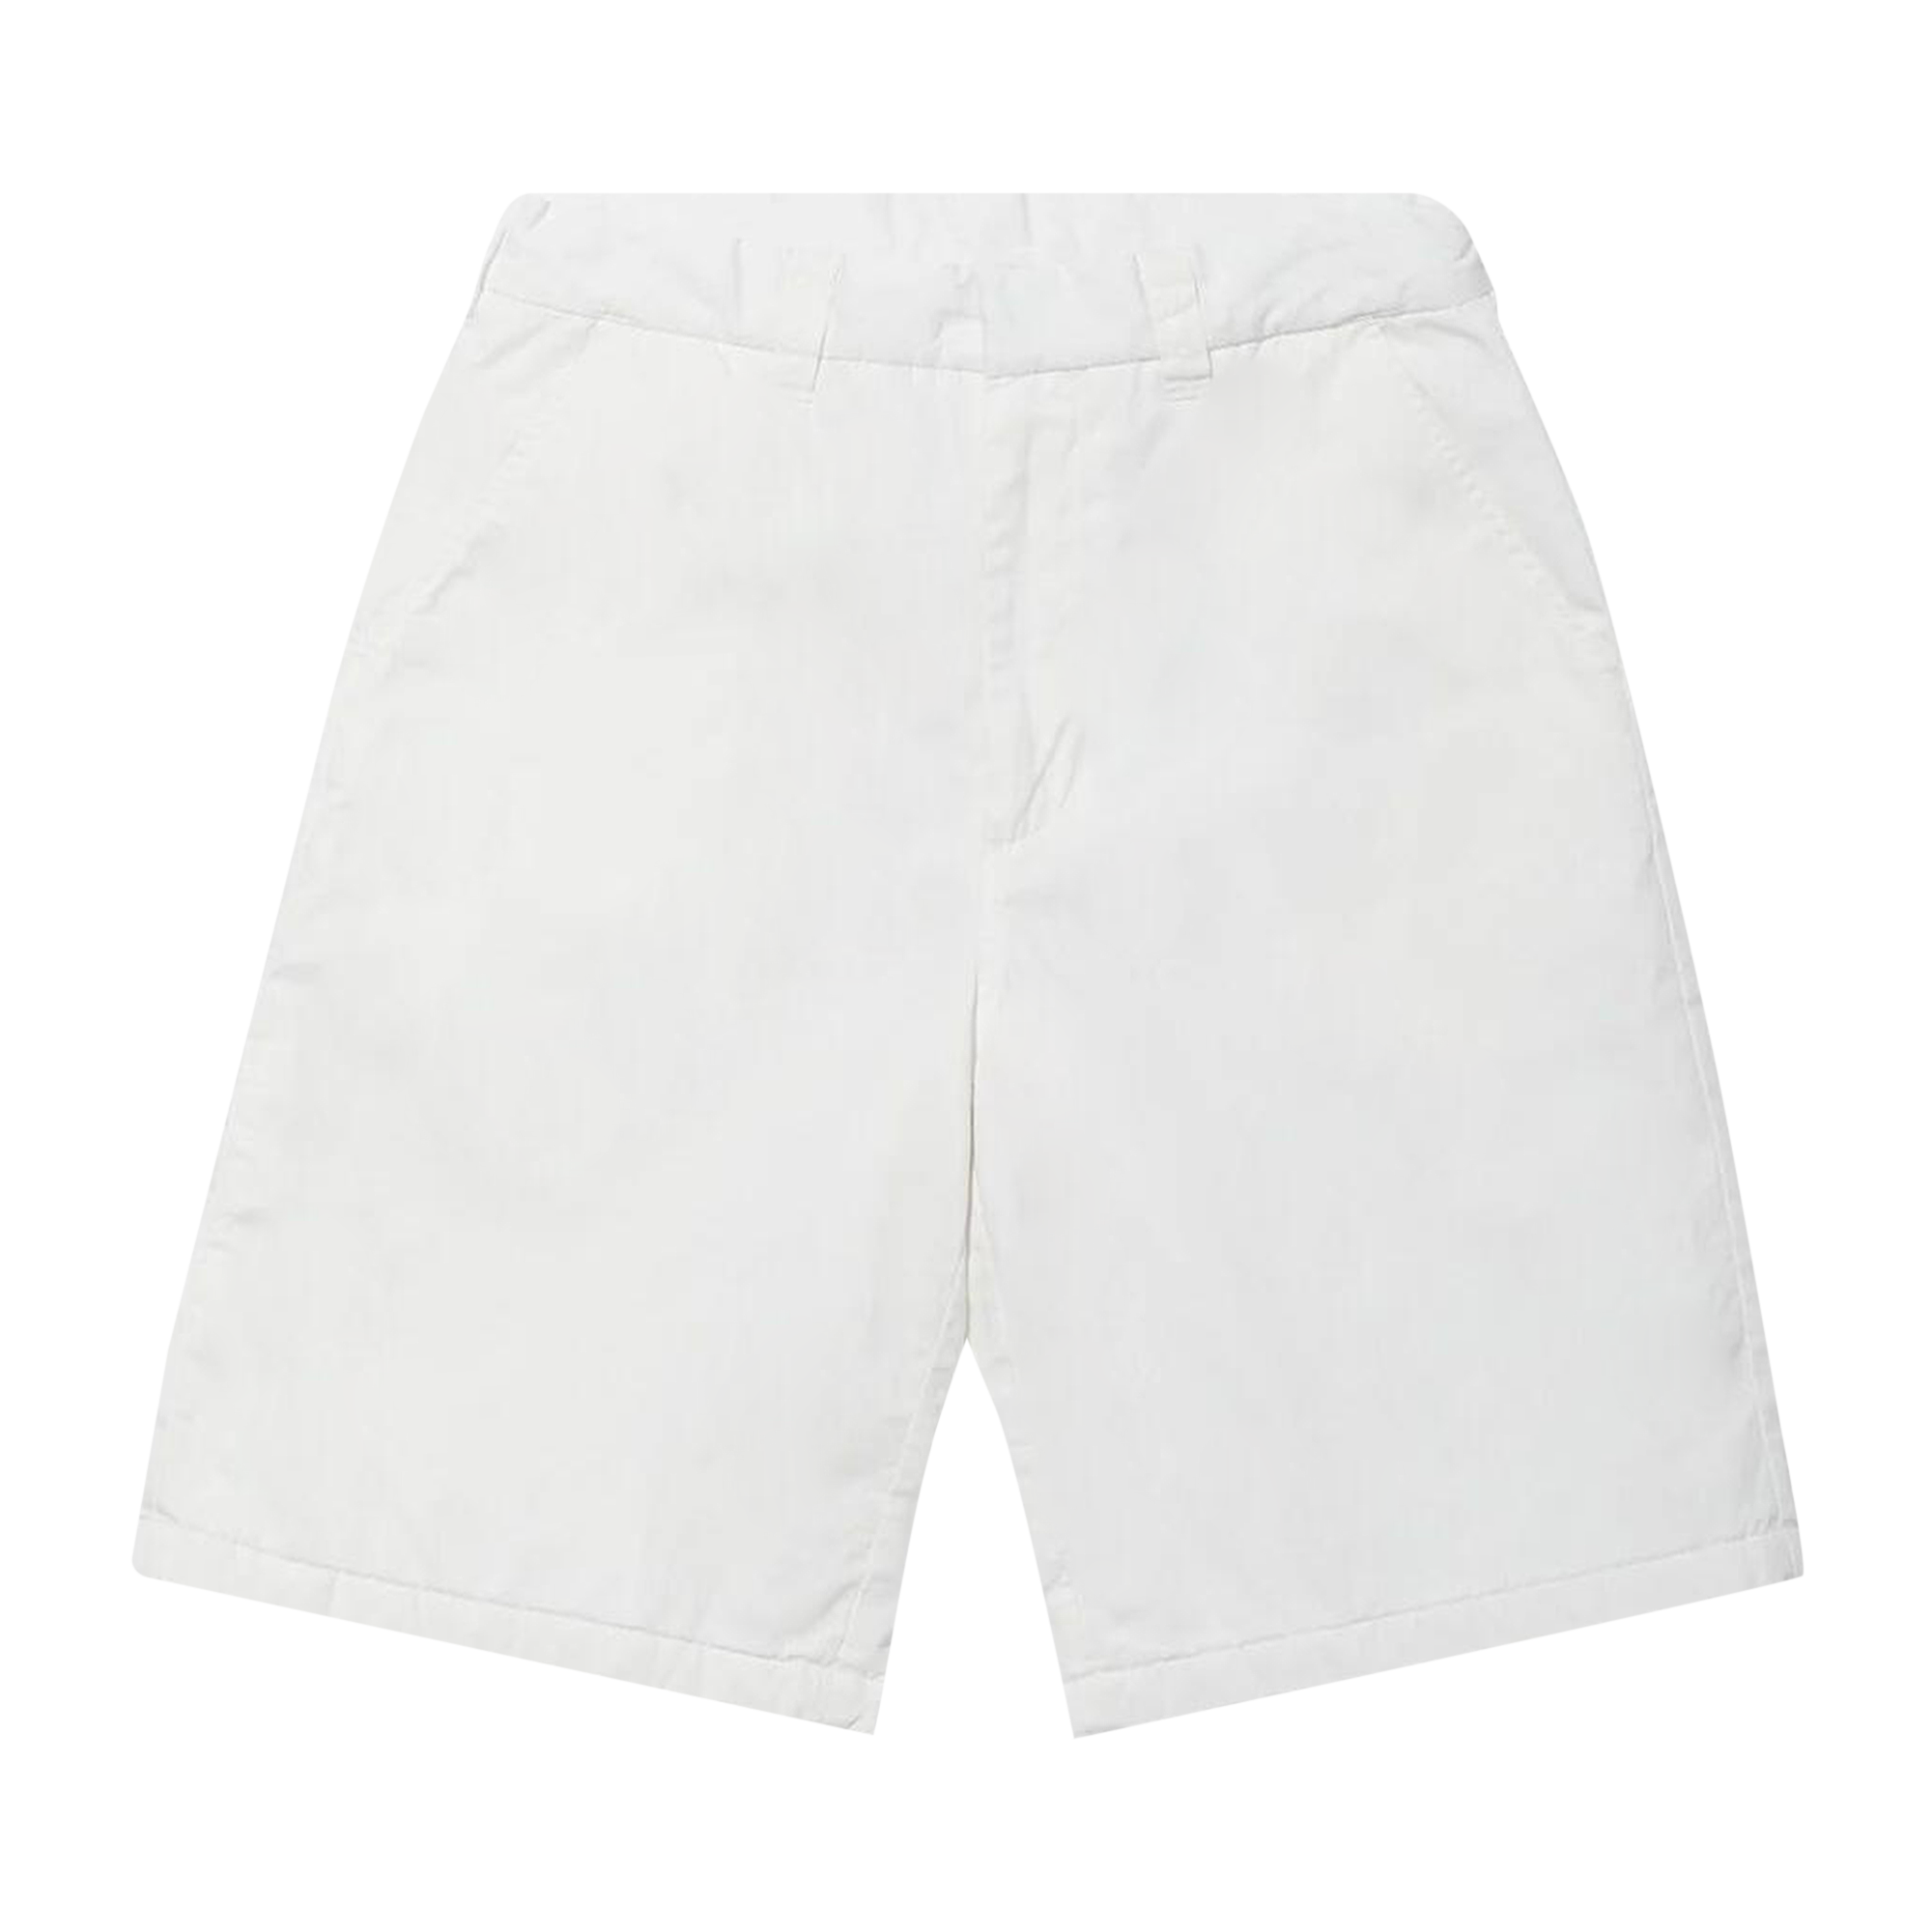 MM6 Maison Margiela White Embroidered Shorts